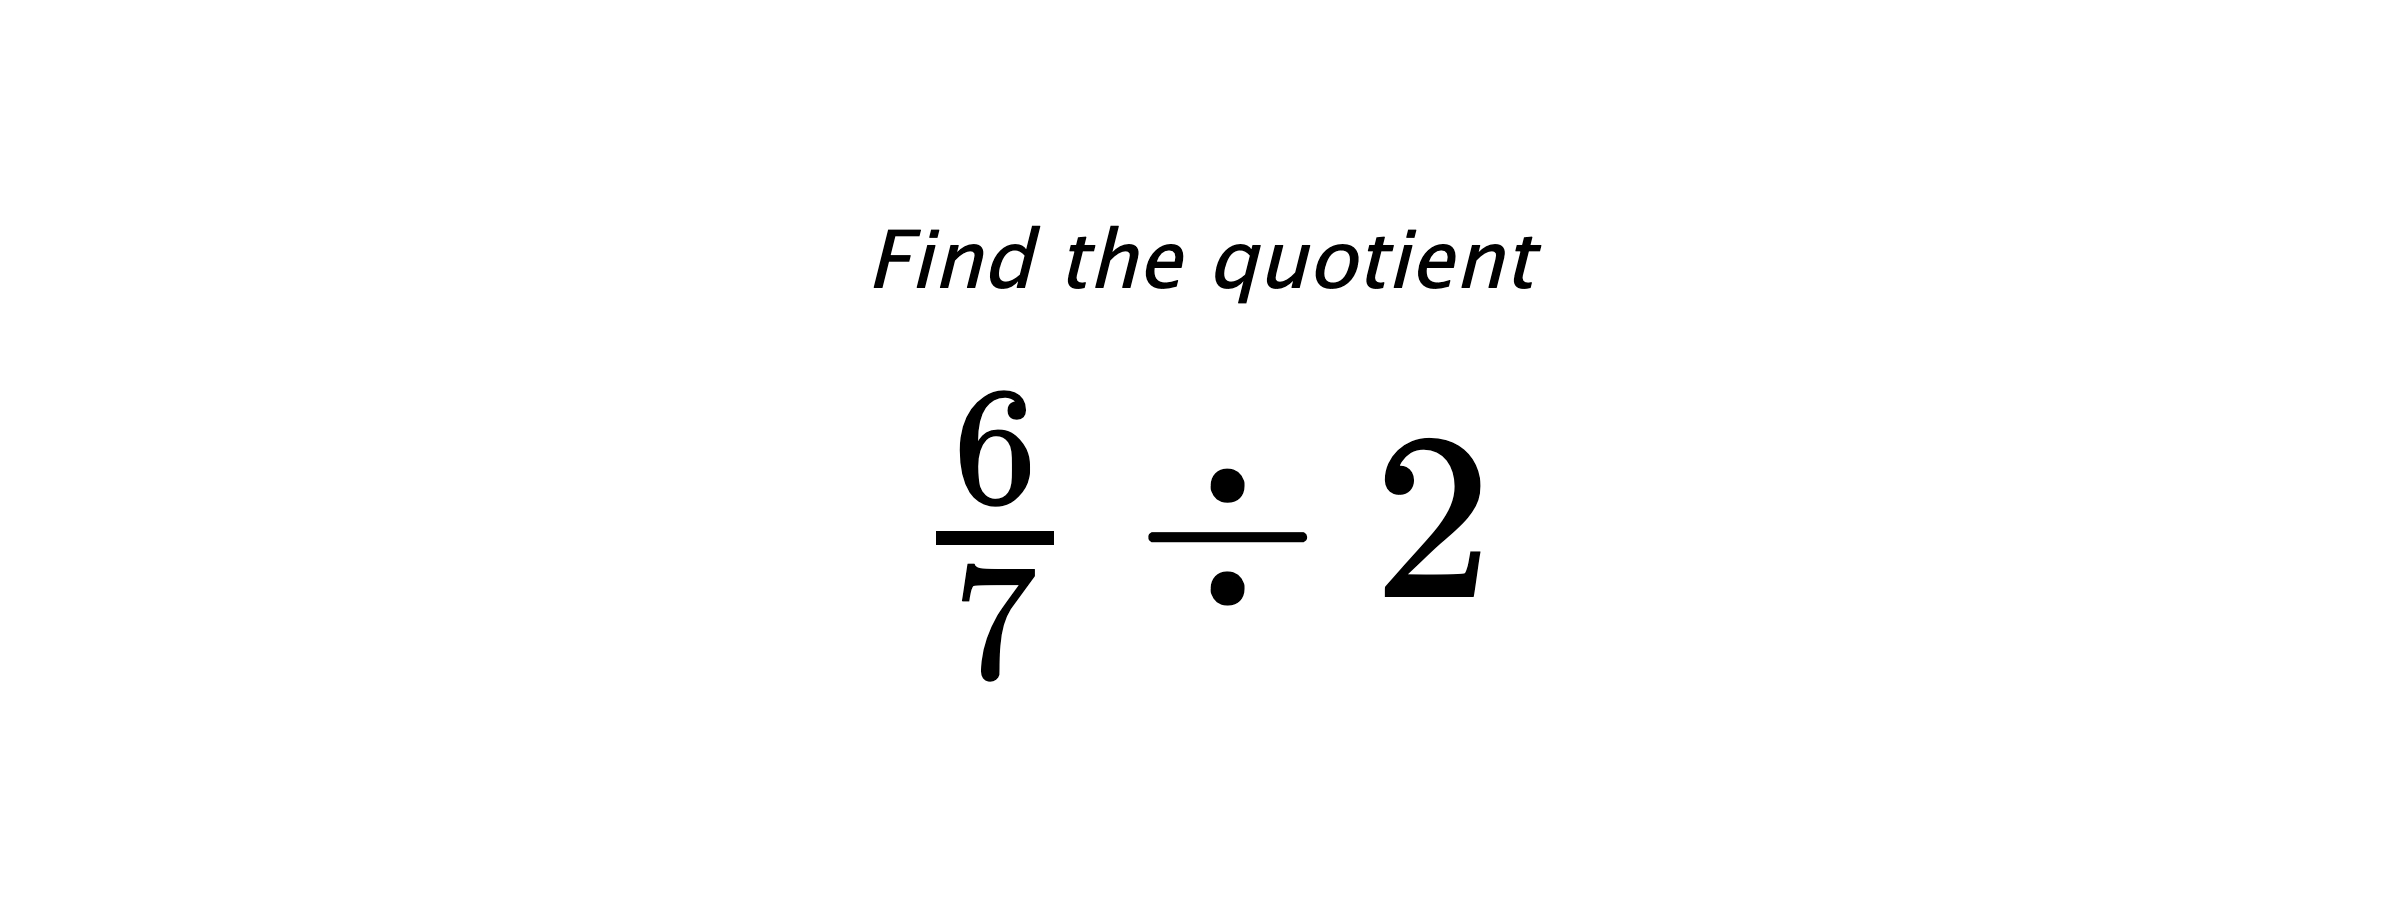 Find the quotient $ \frac{6}{7} \div 2 $